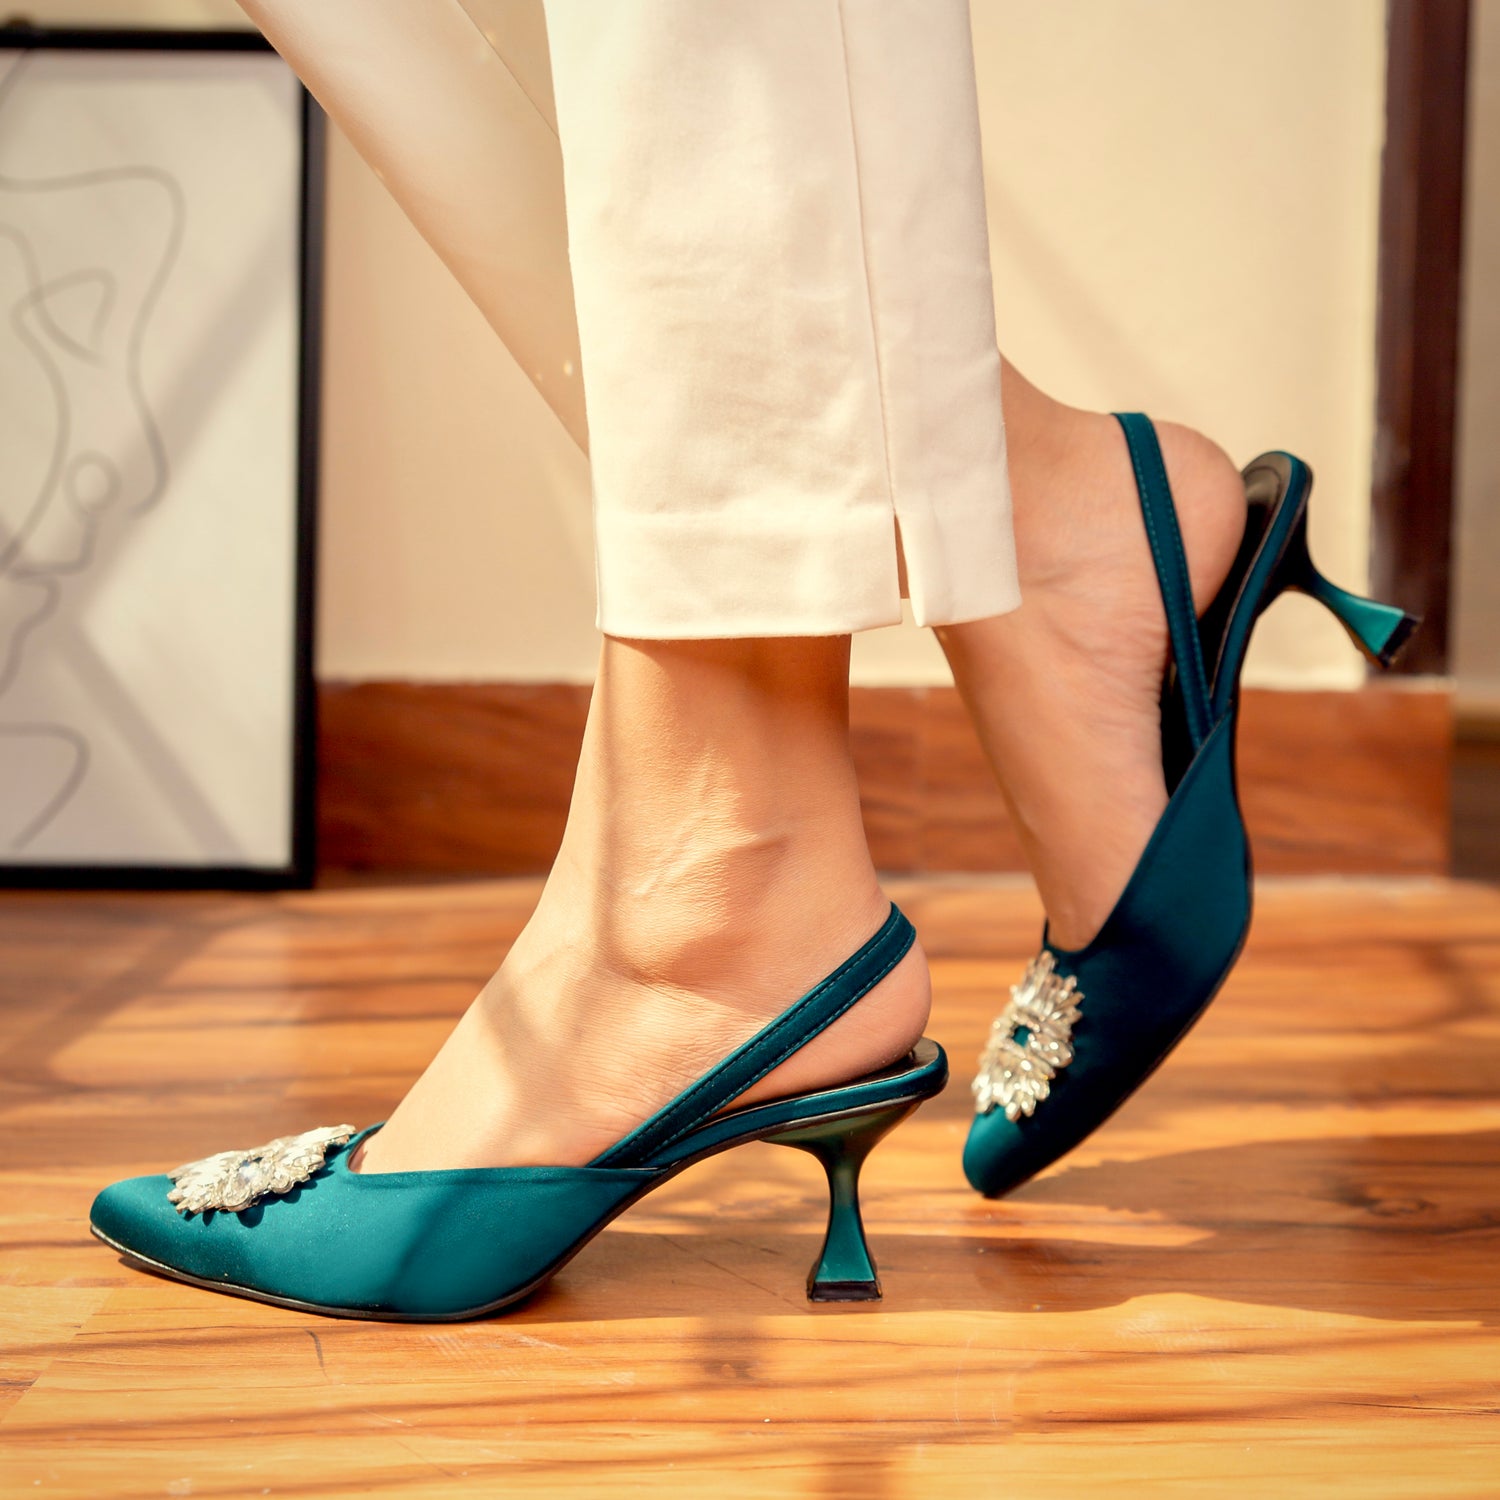 Shop online Best Quality Heel Sandals in Pakistan